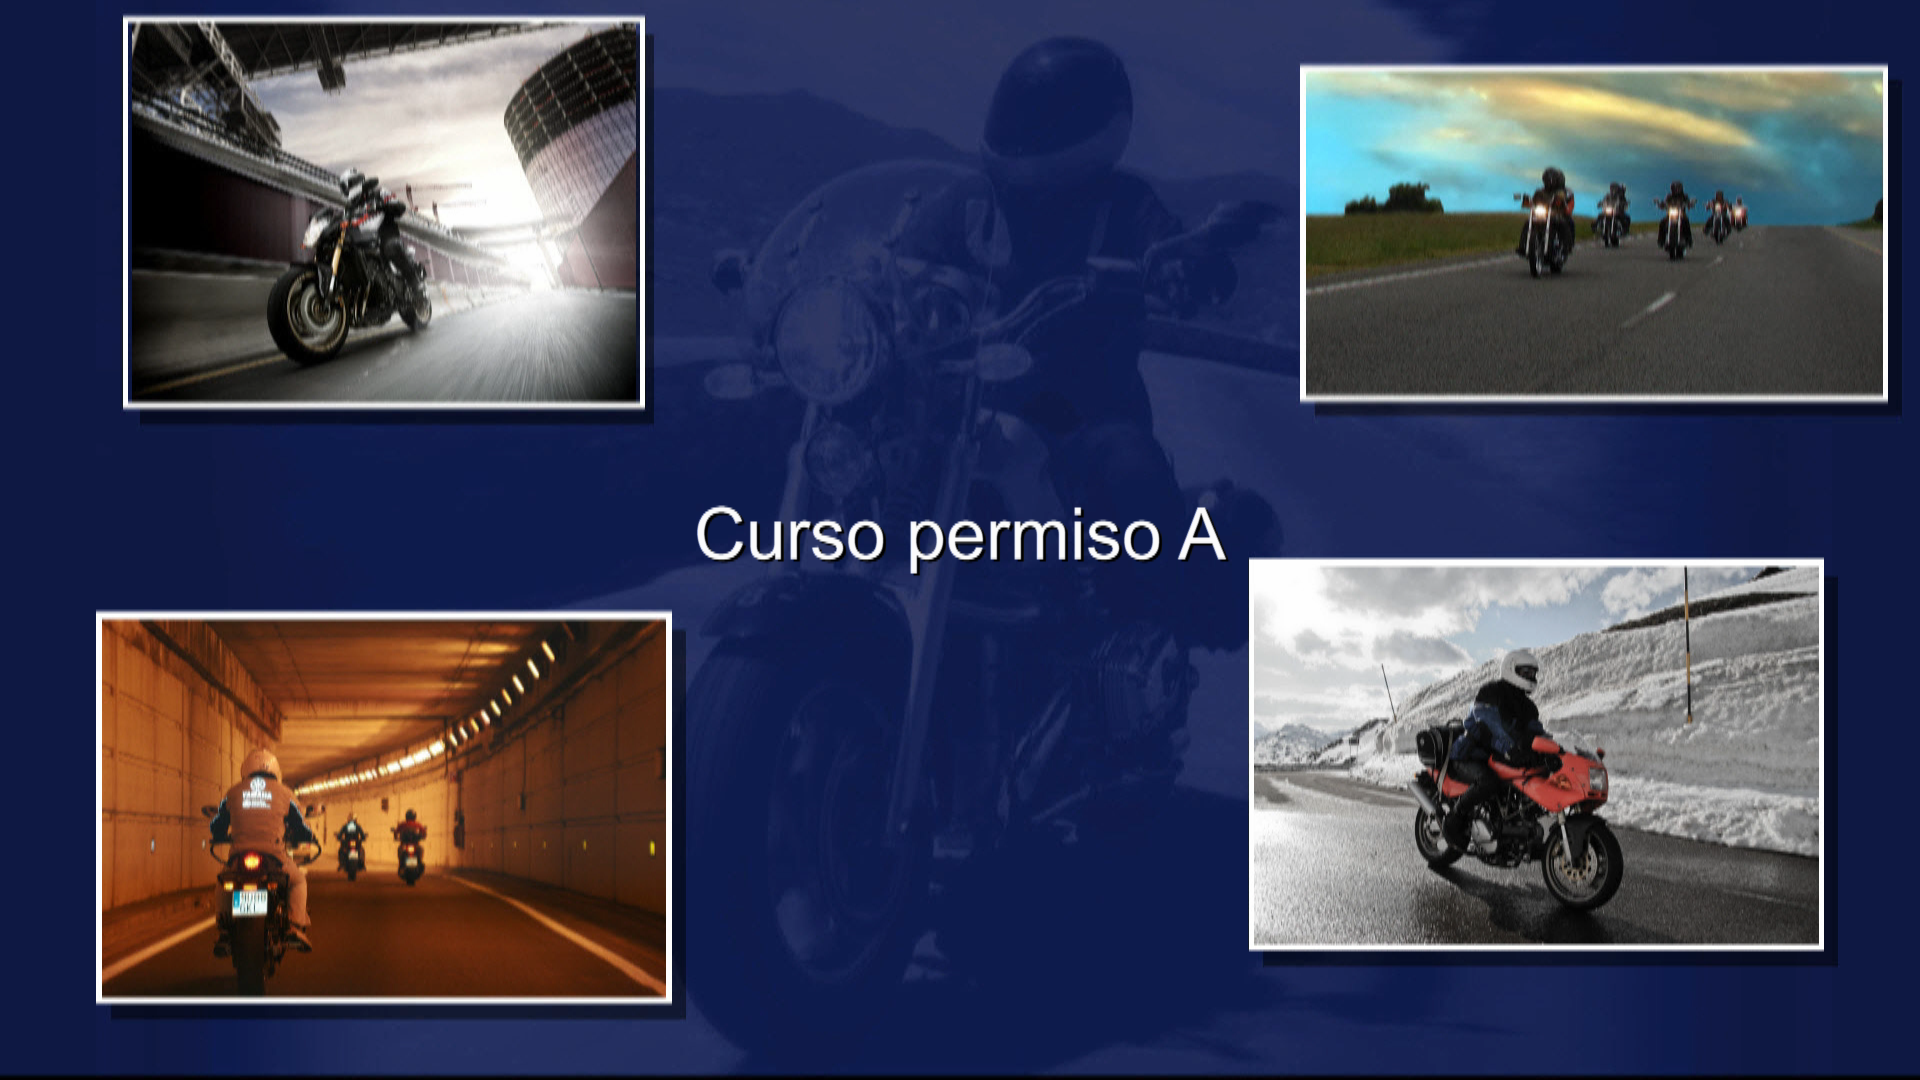 Nuevo vídeo curso para la realización del curso del permiso de la clase A. Motocicletas de más de 600 c.c.